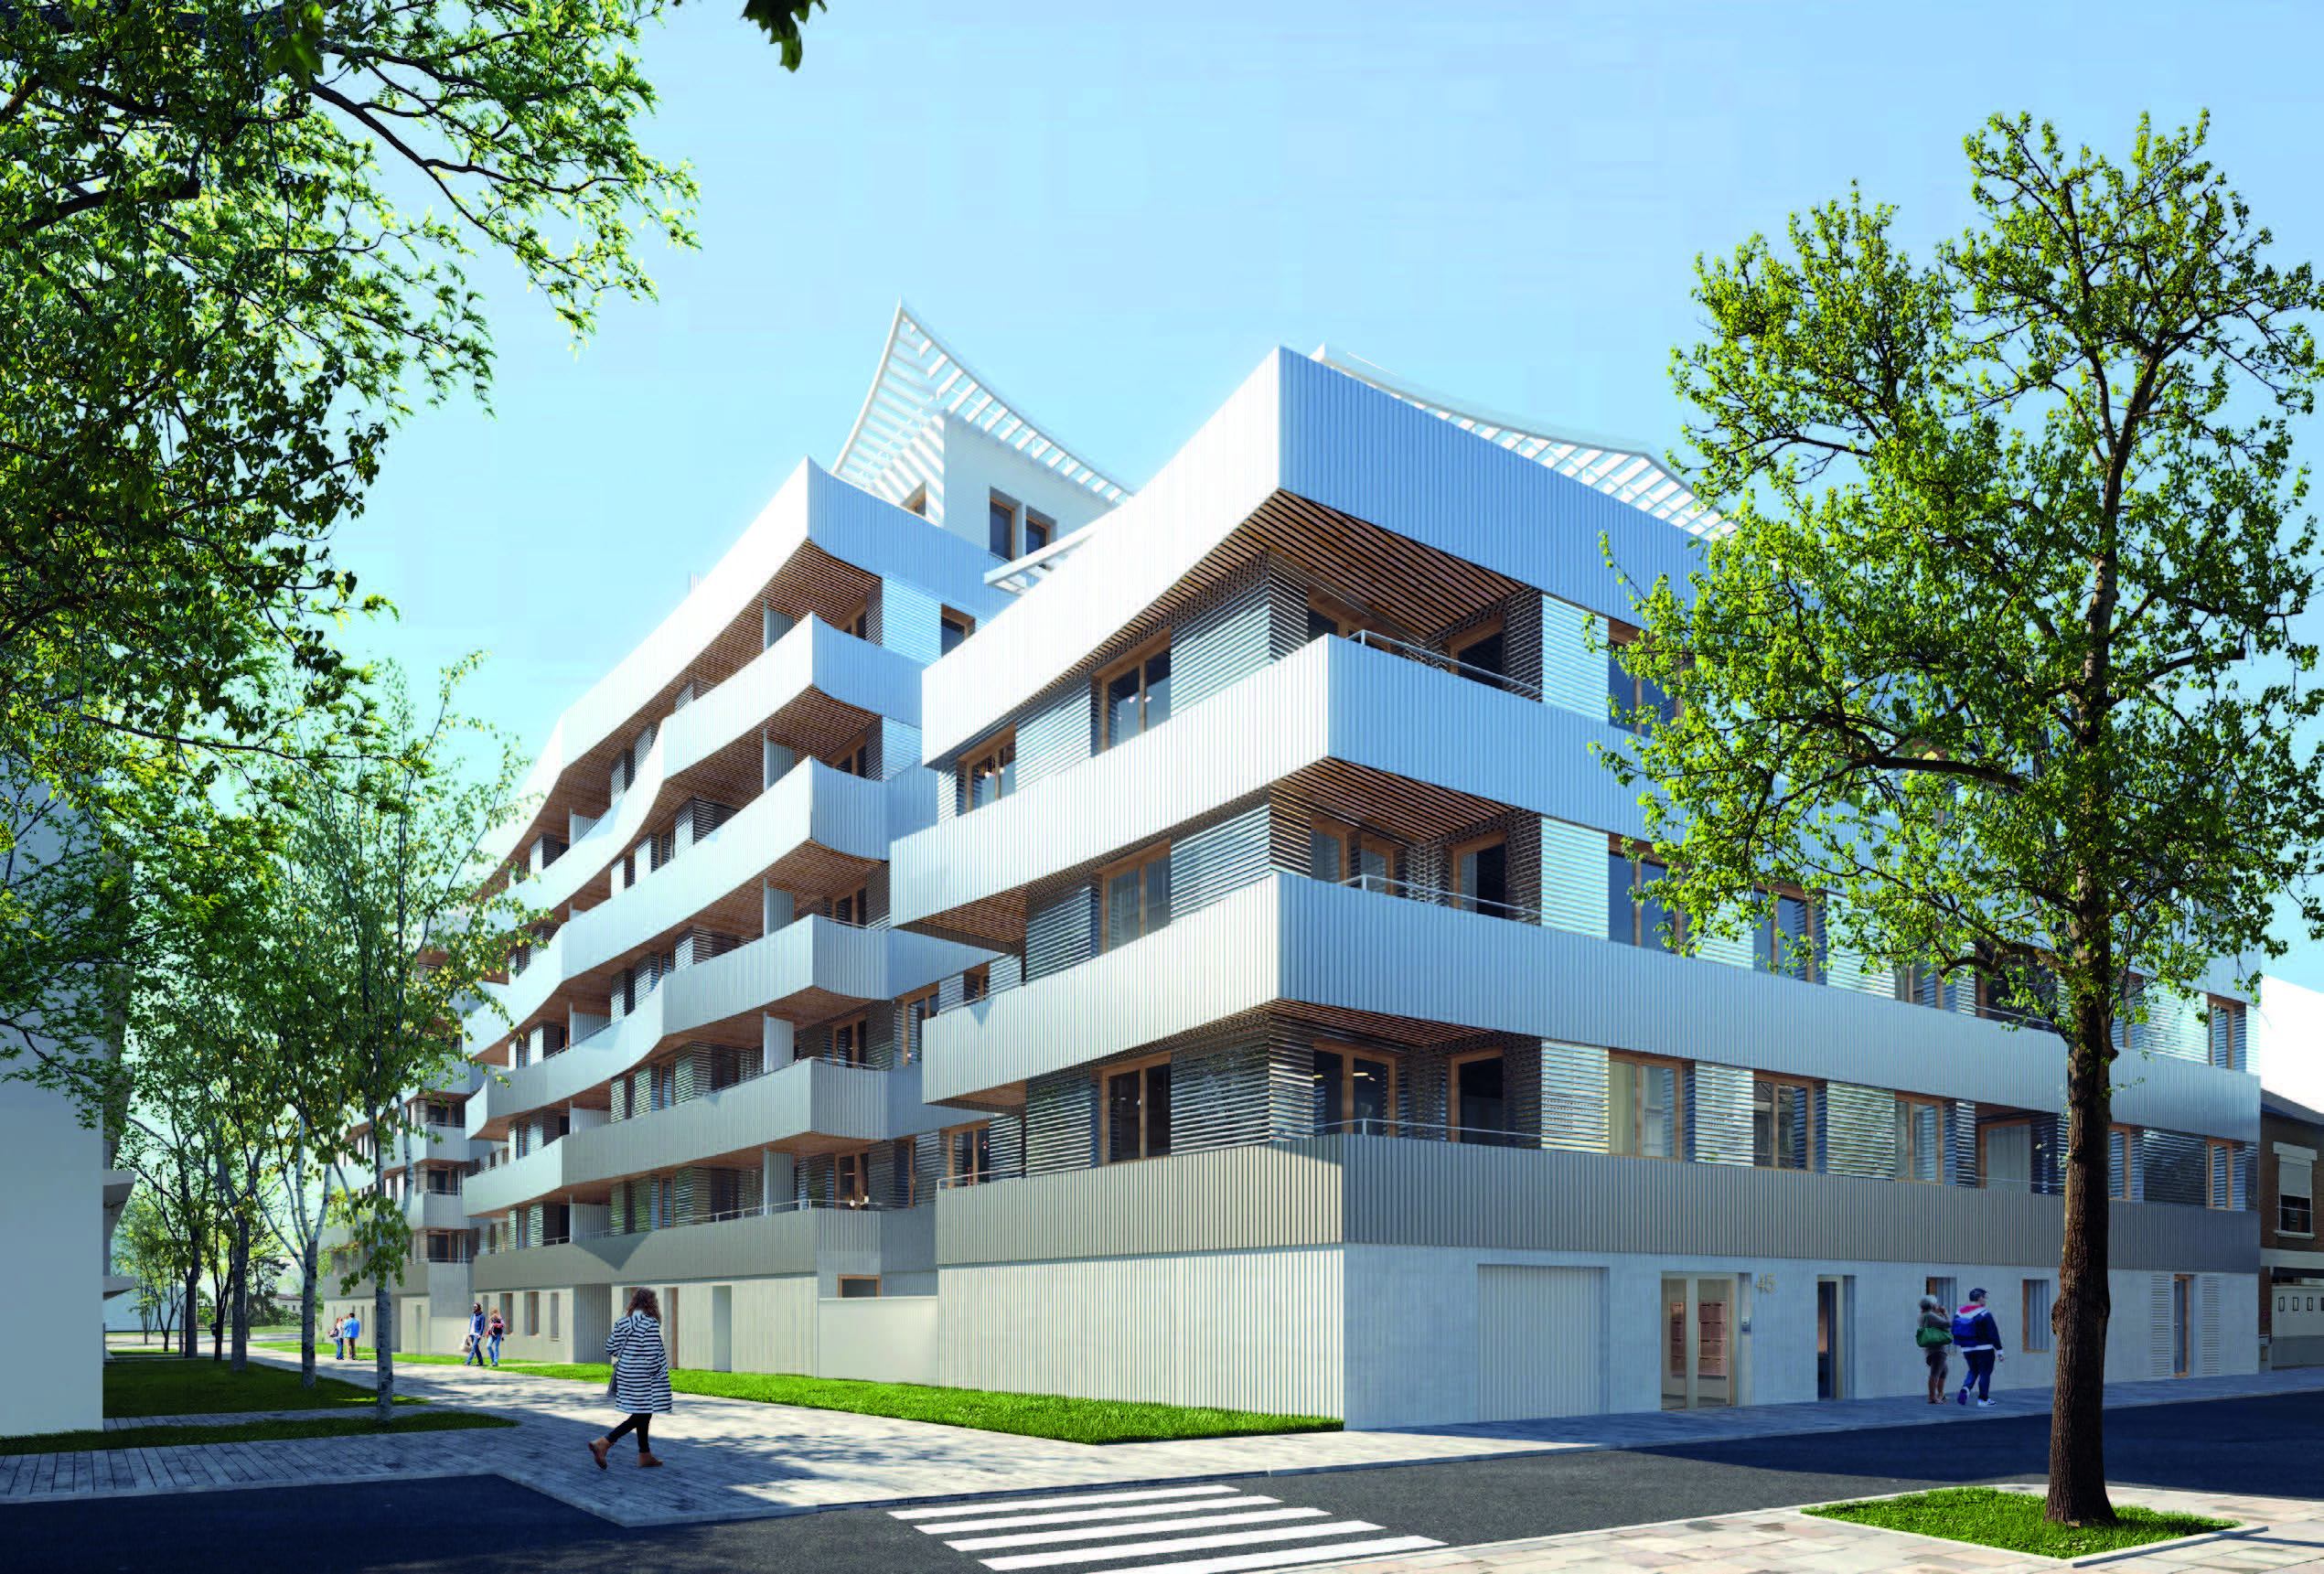 85 logements, Bagneux (92), Nicolas Laisné Architectes, 5 700 m²